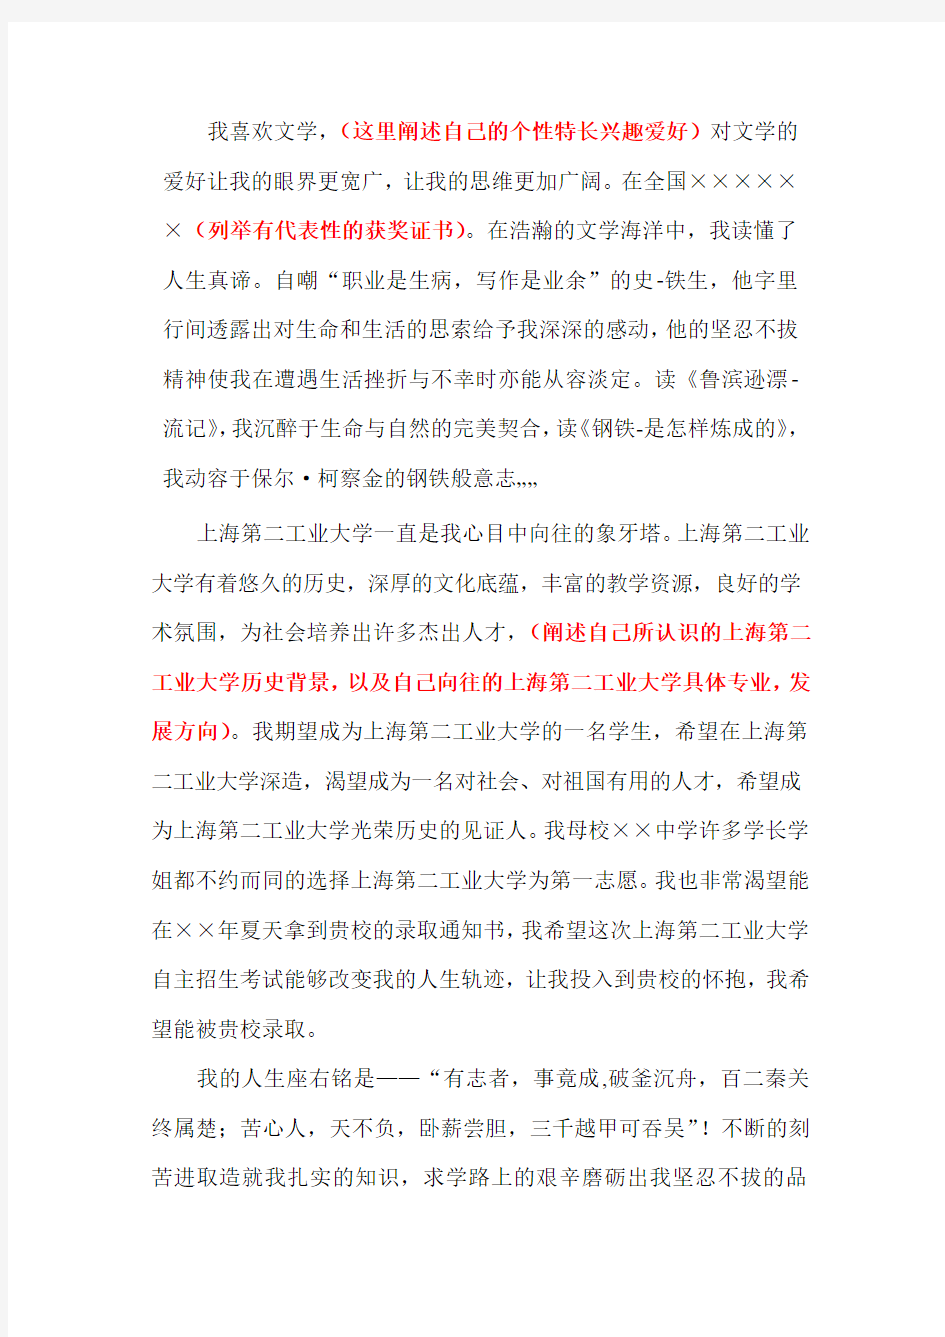 上海第二工业大学自主招生个人陈述自荐信优秀范文